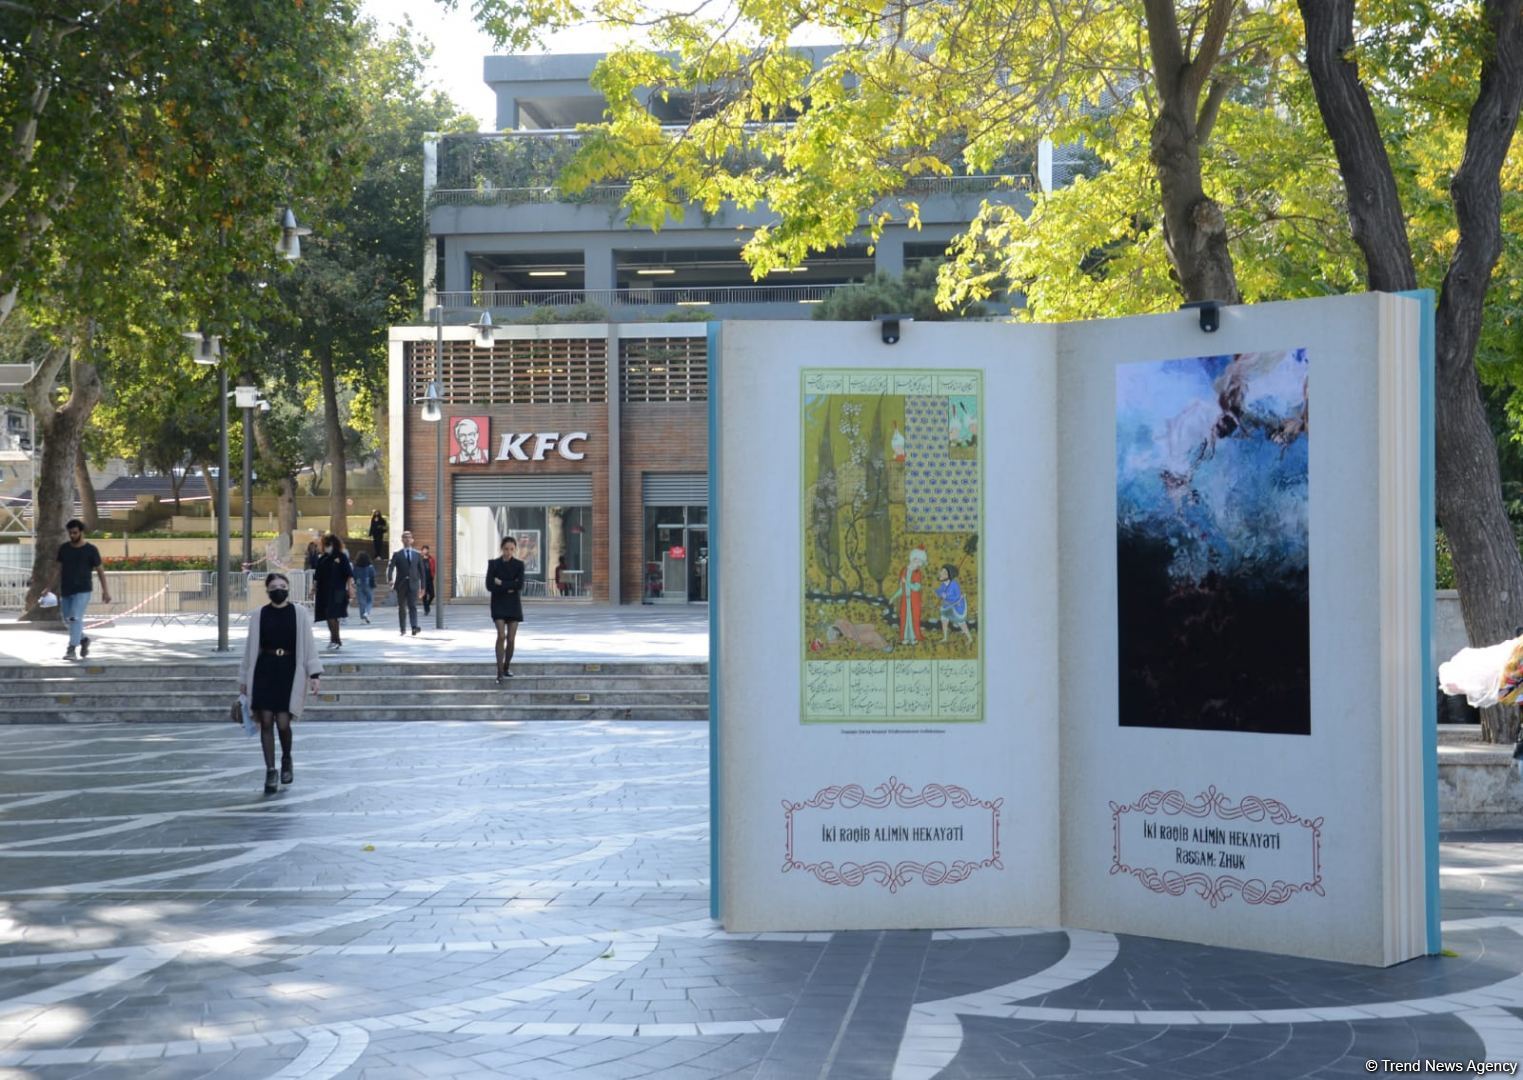 Paytaxtın mərkəzi küçələrində Nizami Gəncəvinin yaradıcılığını əks etdirən kitab maketlər quraşdırılıb (FOTOSESSİYA)